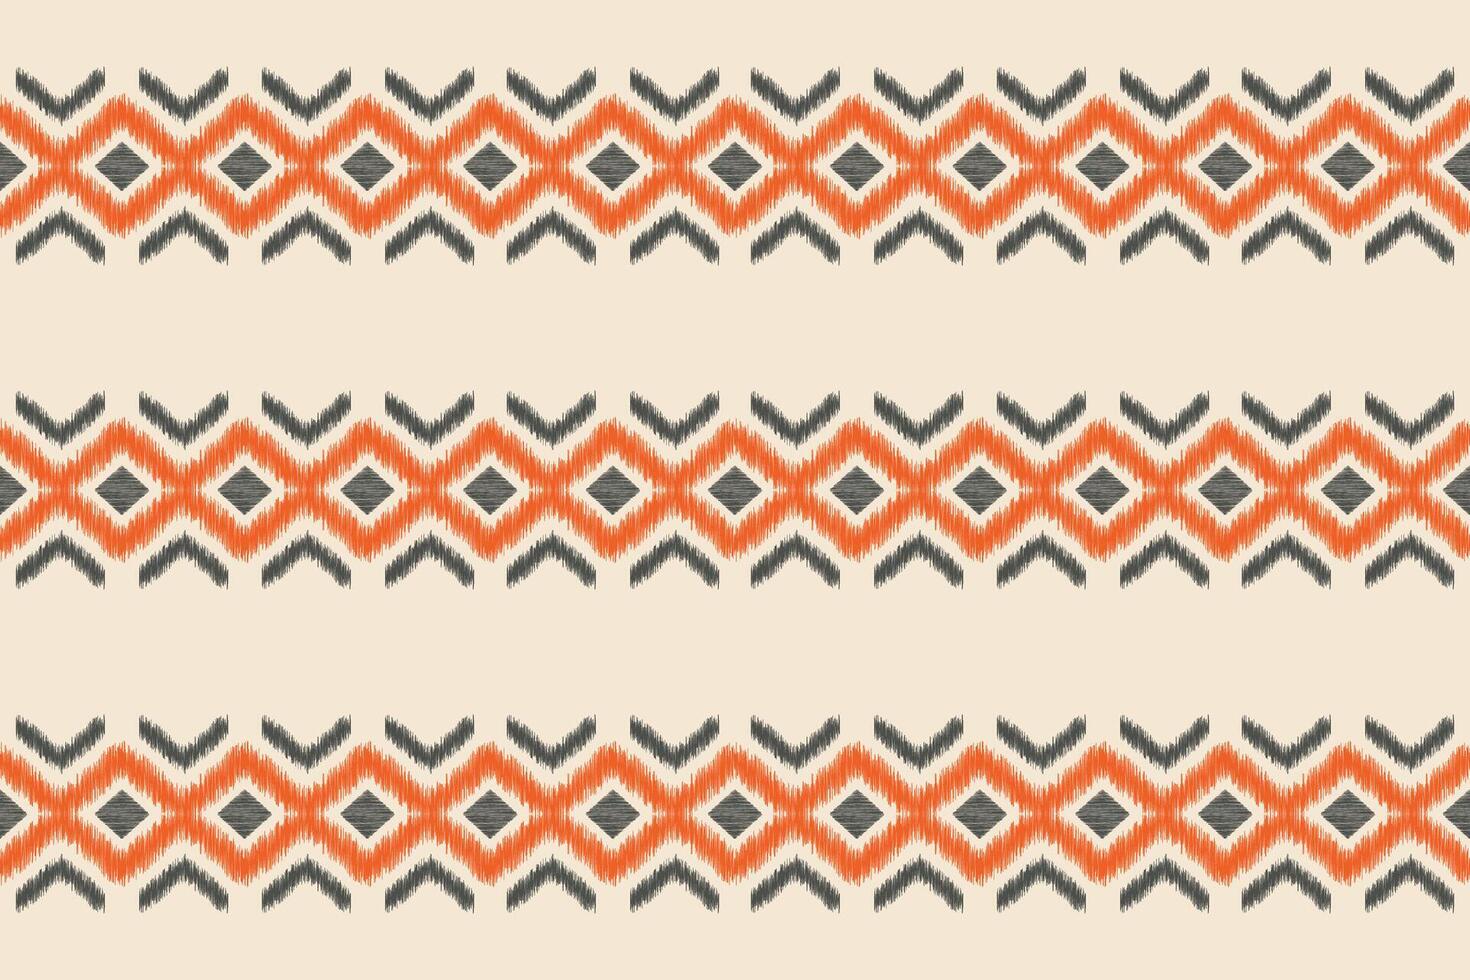 étnico ikat tela modelo geométrico estilo.africano ikat bordado étnico oriental modelo marrón crema antecedentes. resumen,vector,ilustración.textura,ropa,marco,decoración,motivo,alfombra. vector